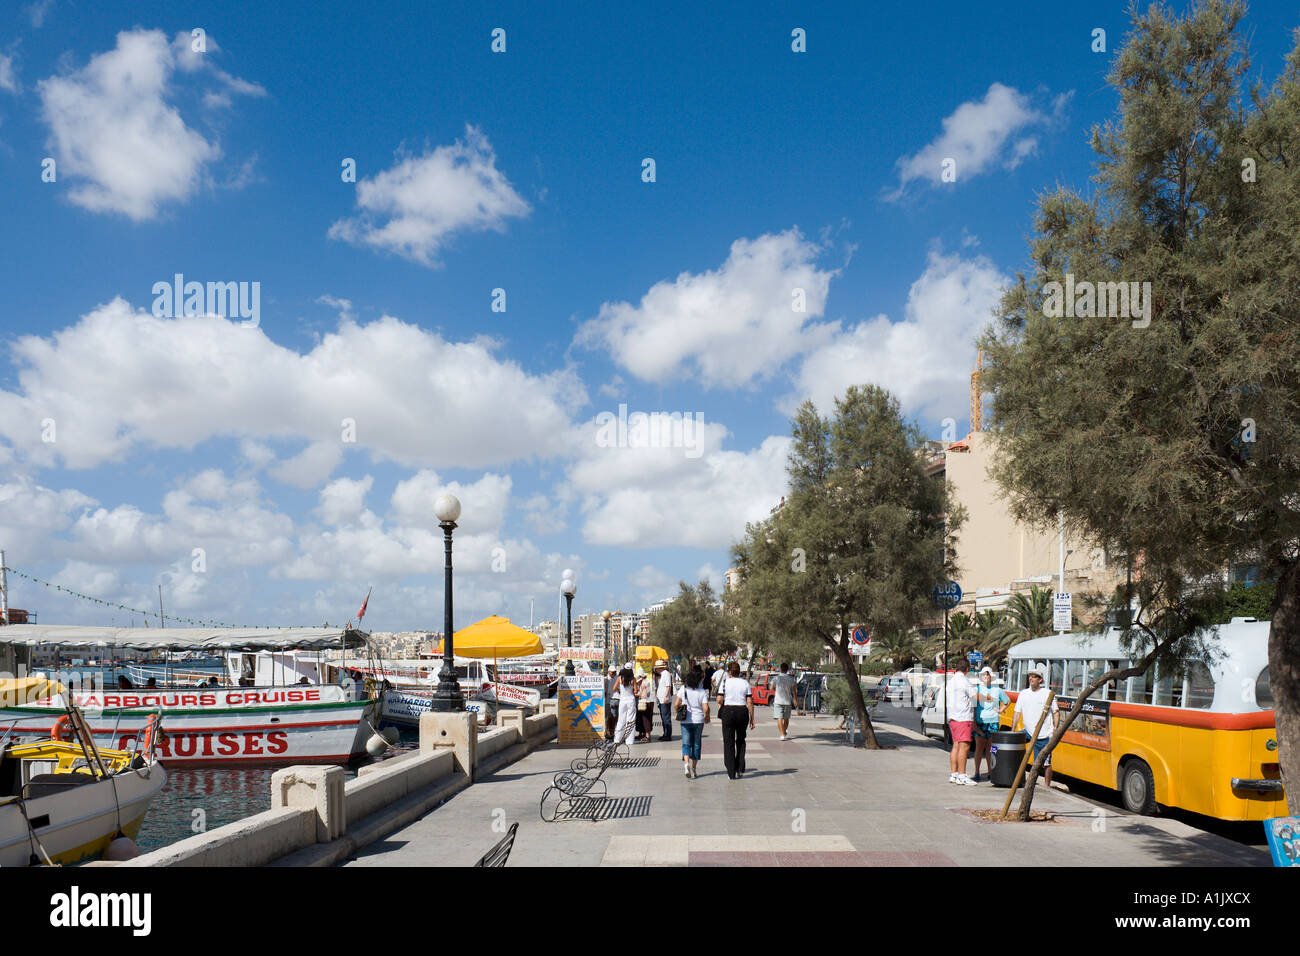 Seafront Promenade in Sliema, Malta Stock Photo